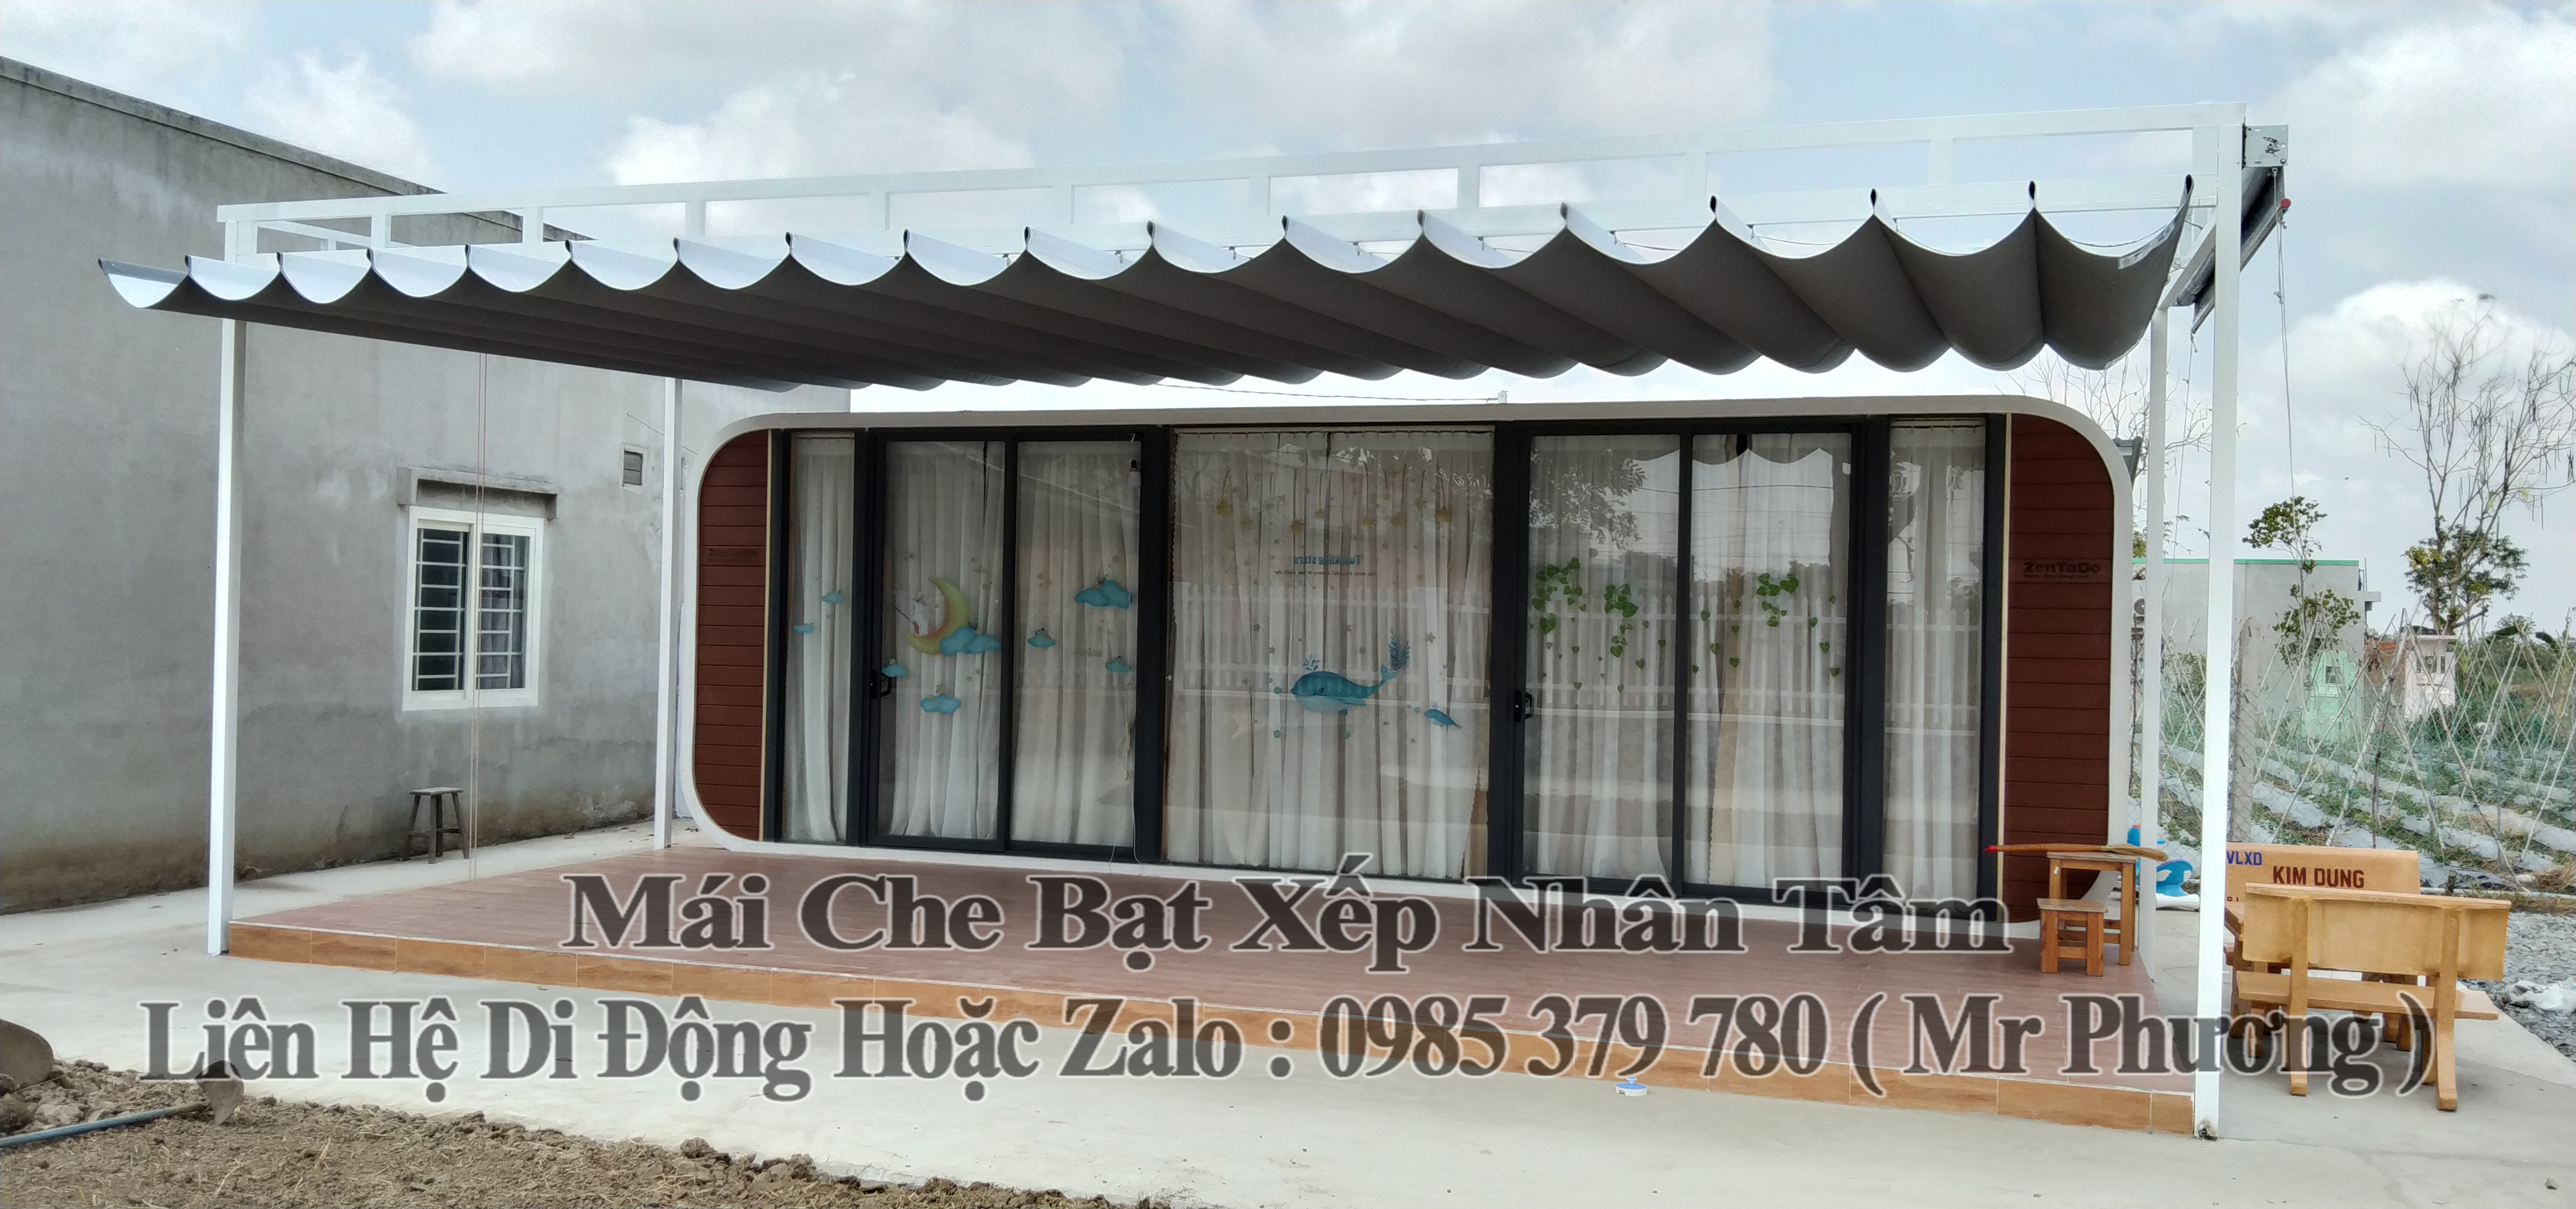 Mái Che Bạt Xếp Sân Nhà Cai Lậy Tiền Giang